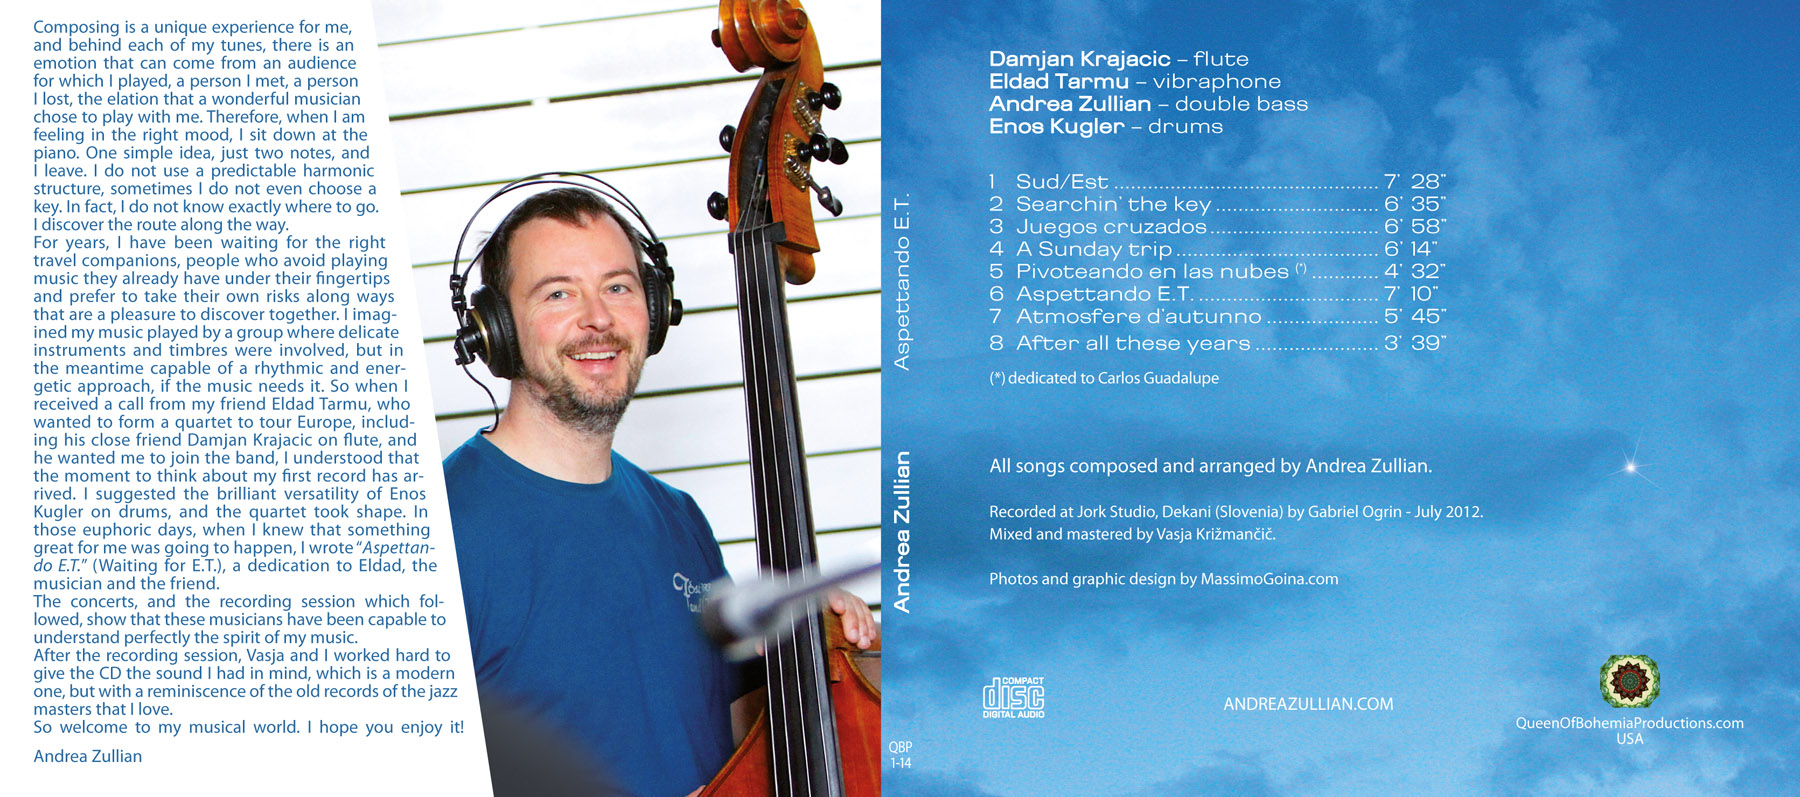 Interno della copertina del CD di Andrea Zullian "Aspettando E.T.", Grafica di Massimo Goina